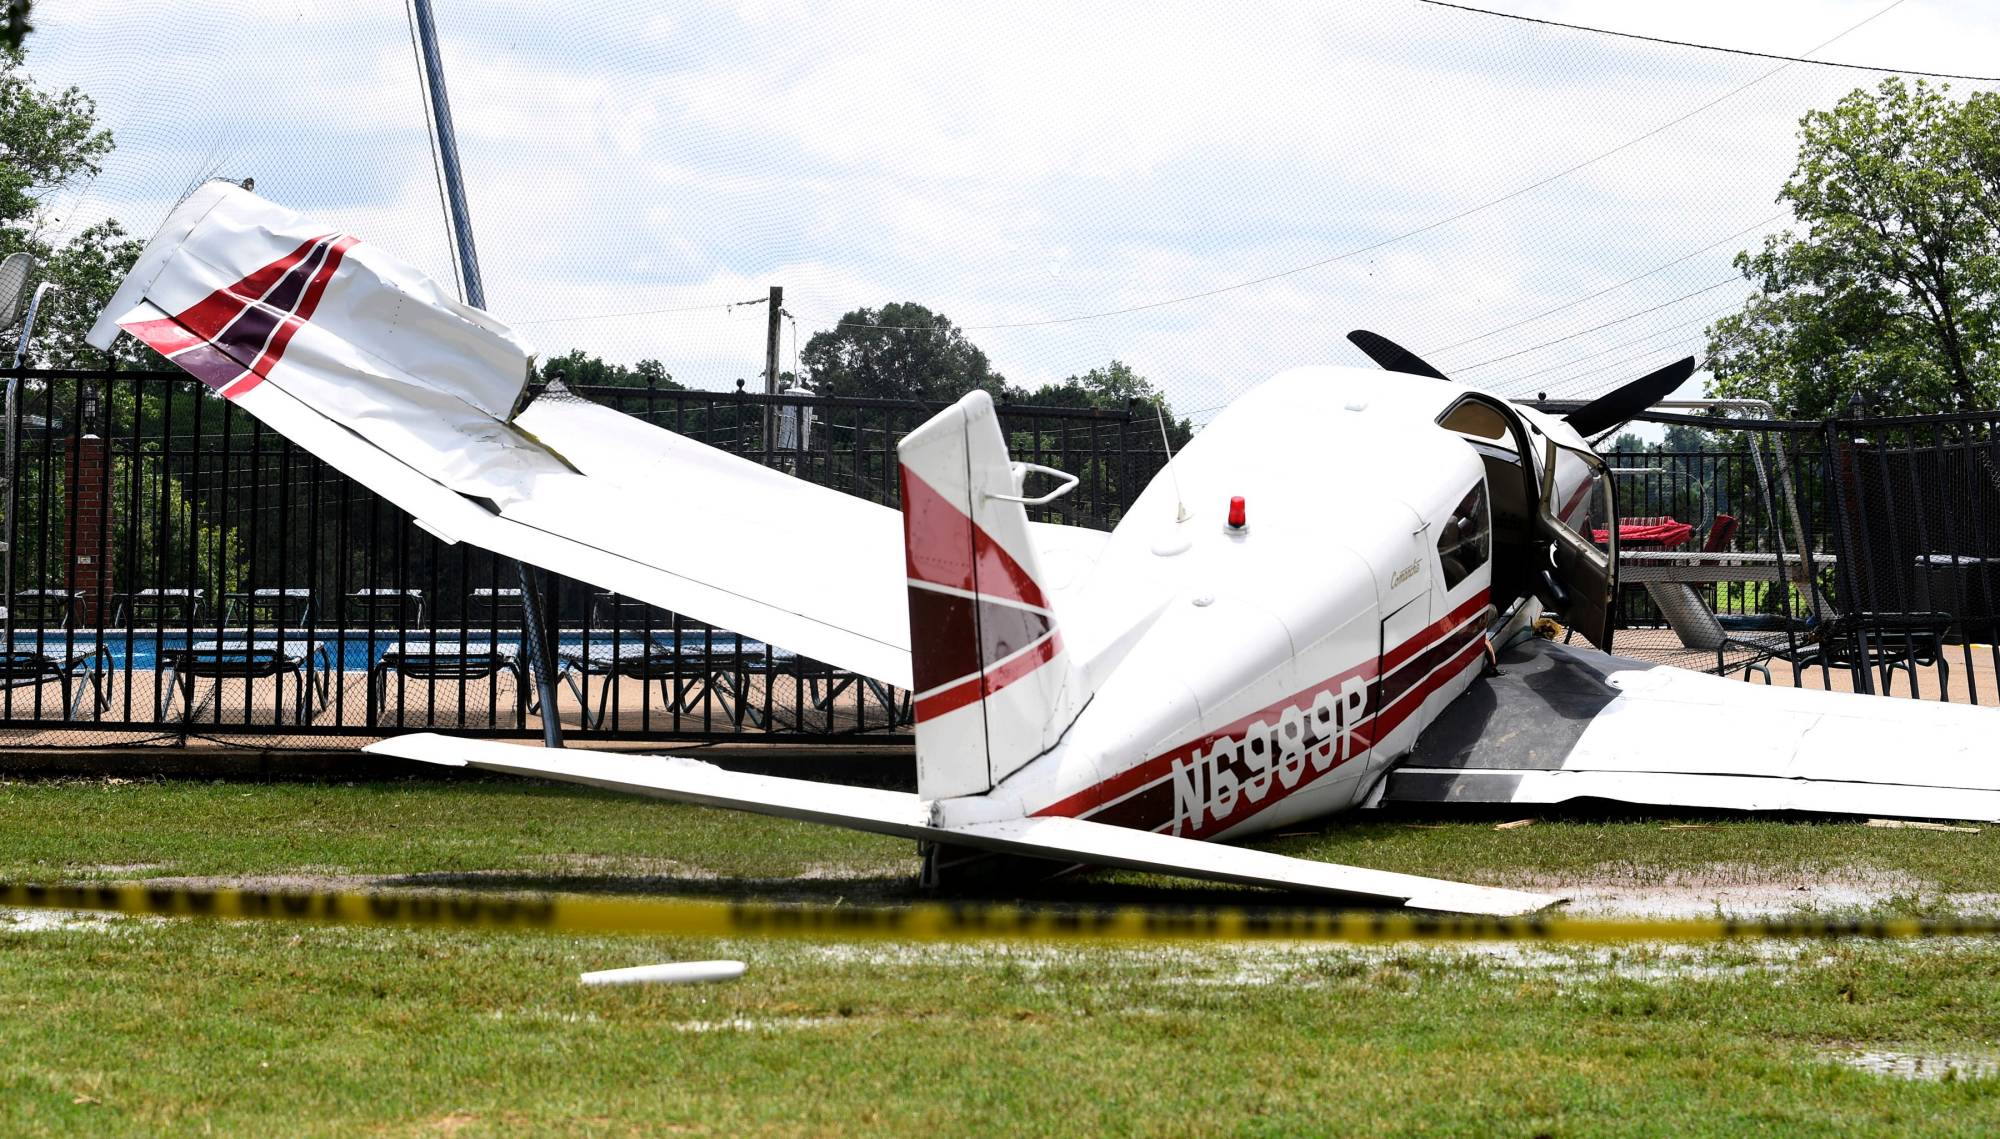 Máy bay rơi xuống sân golf tại Tennessee